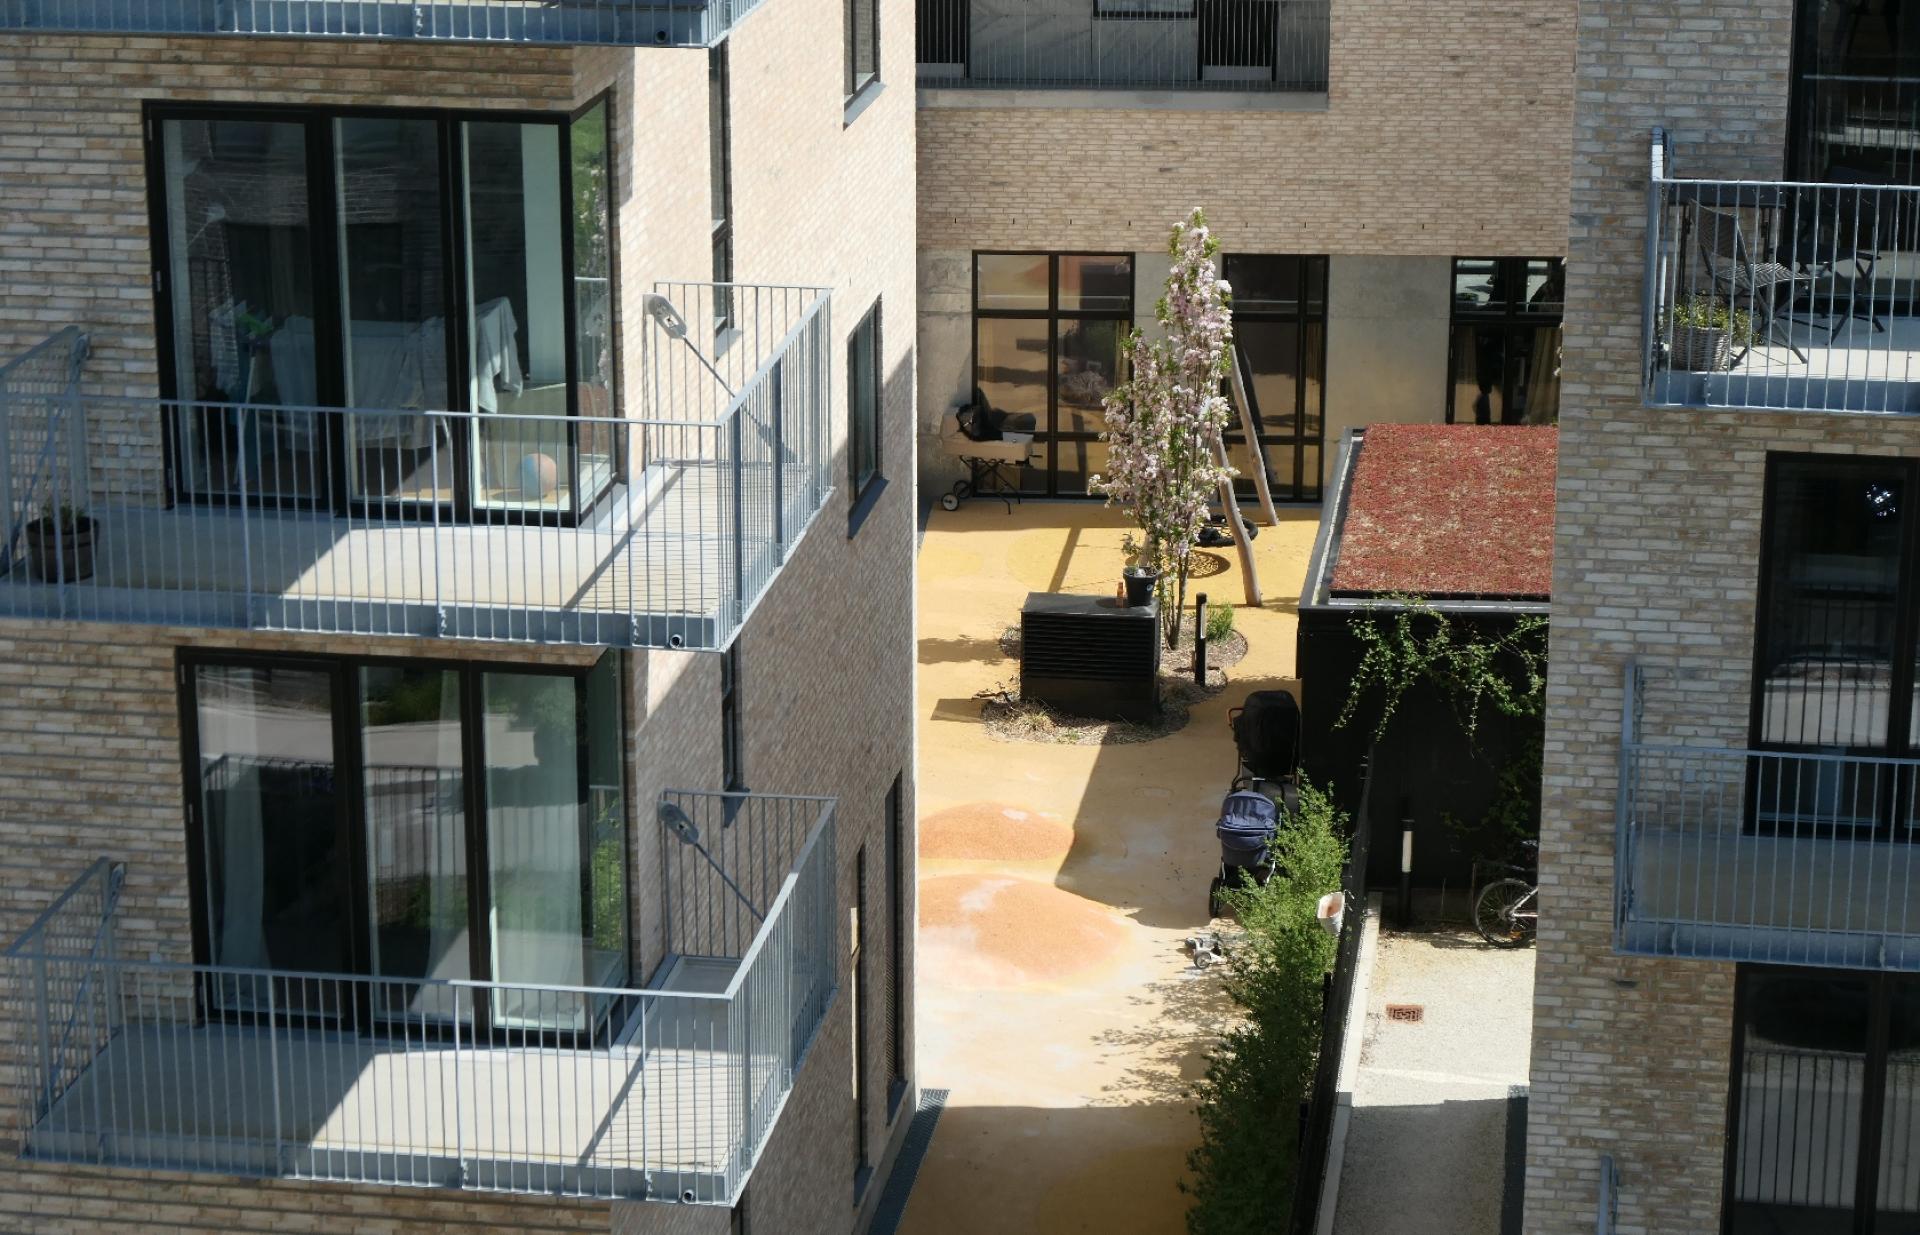 Fællesskab skal være en mulighed i Munkebjergparken, men alle boliger har også en altan eller en privat terrasse, så beboerne kan trække sig tilbage efter behov.